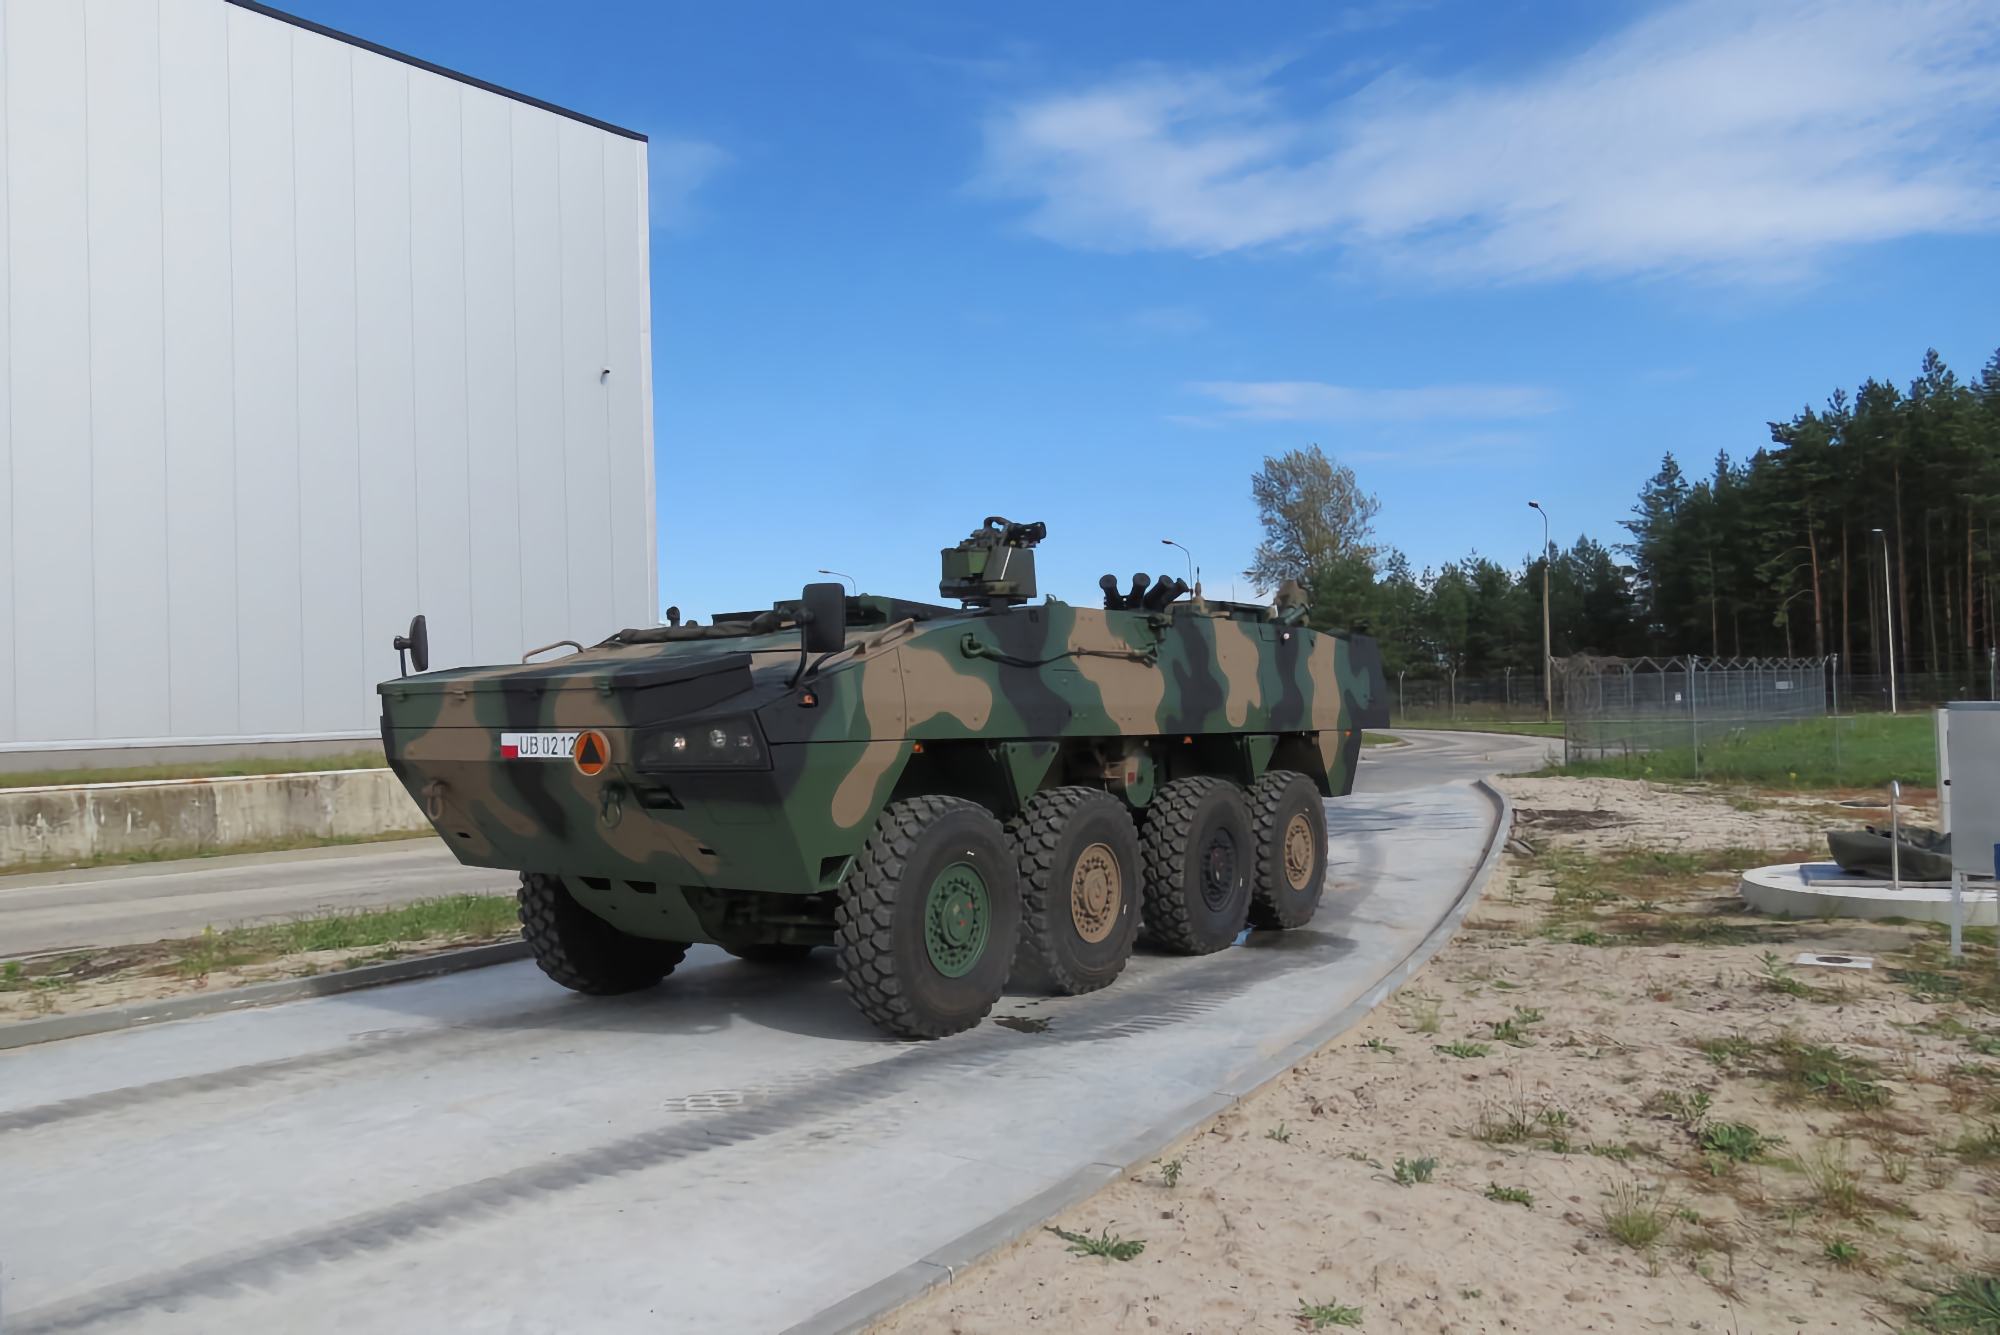 Polska zakupiła 30 artyleryjskich wozów rozpoznawczych do obsługi moździerzy samobieżnych firmy RAK, kwota transakcji to 332 000 000 USD